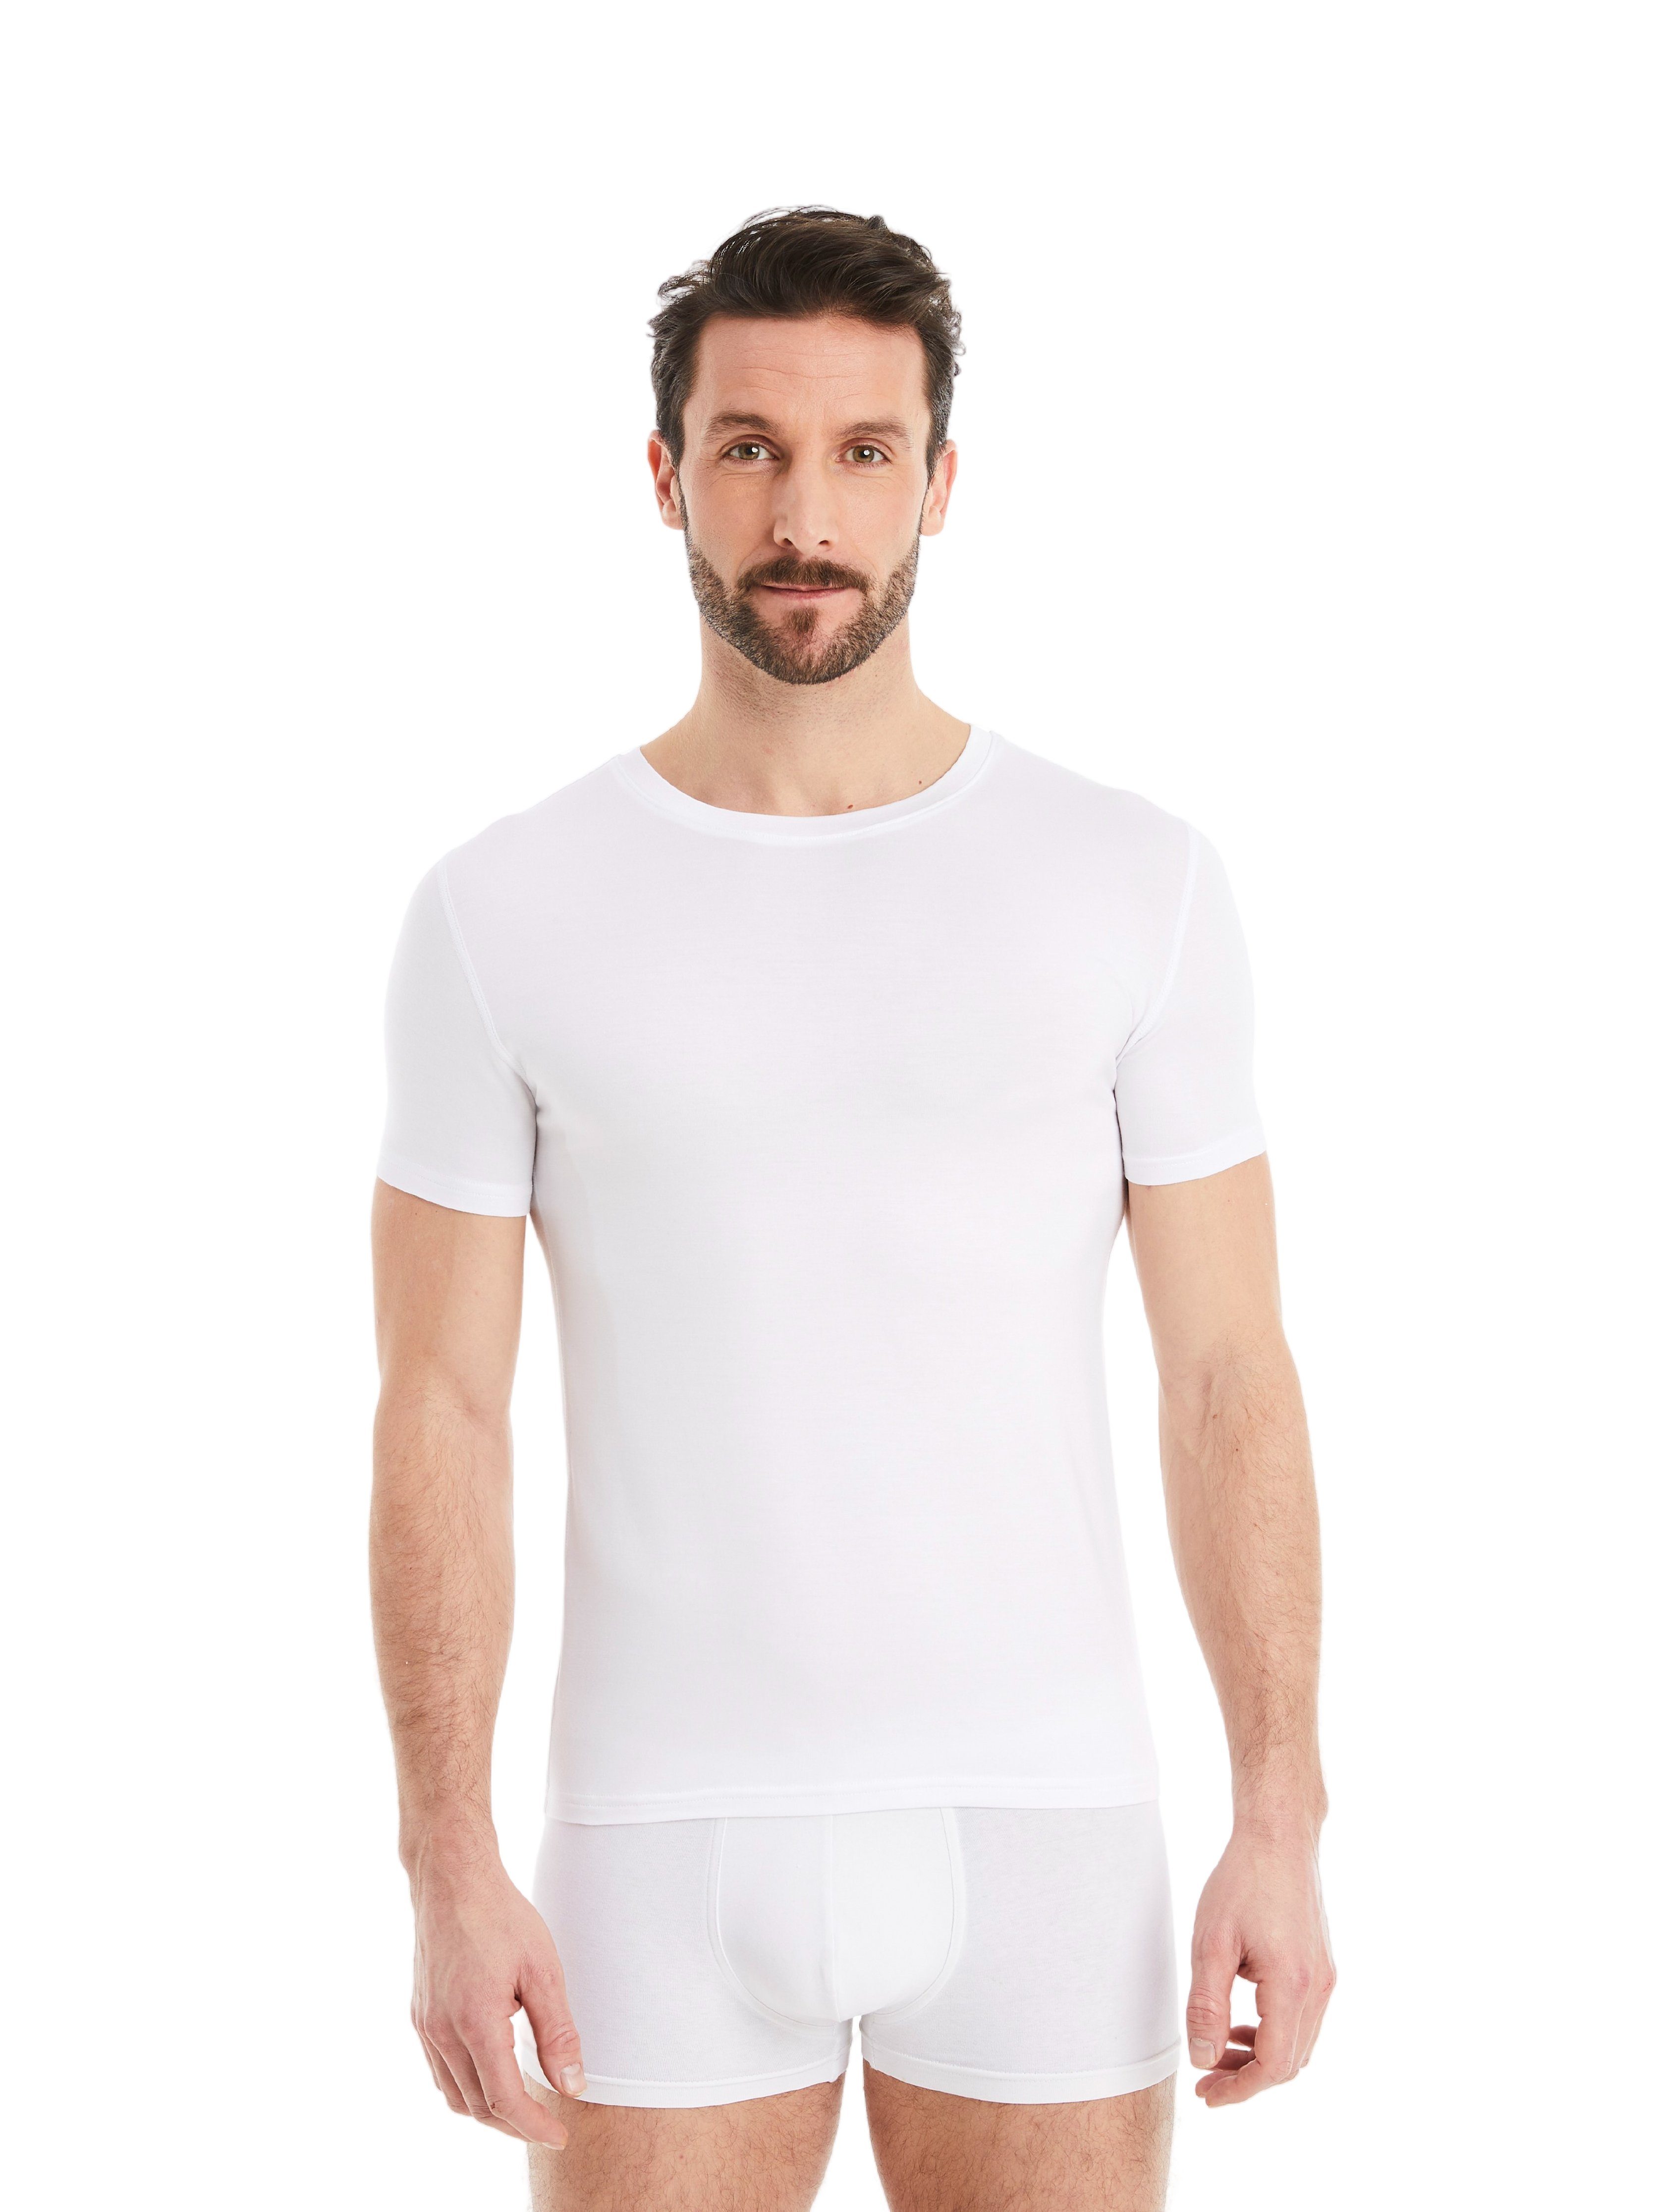 Business maximaler Design Stoff, Micro-Modal Weiß Kurzarm Rundhals FINN mit Unterhemd feiner Tragekomfort Unterhemd Herren